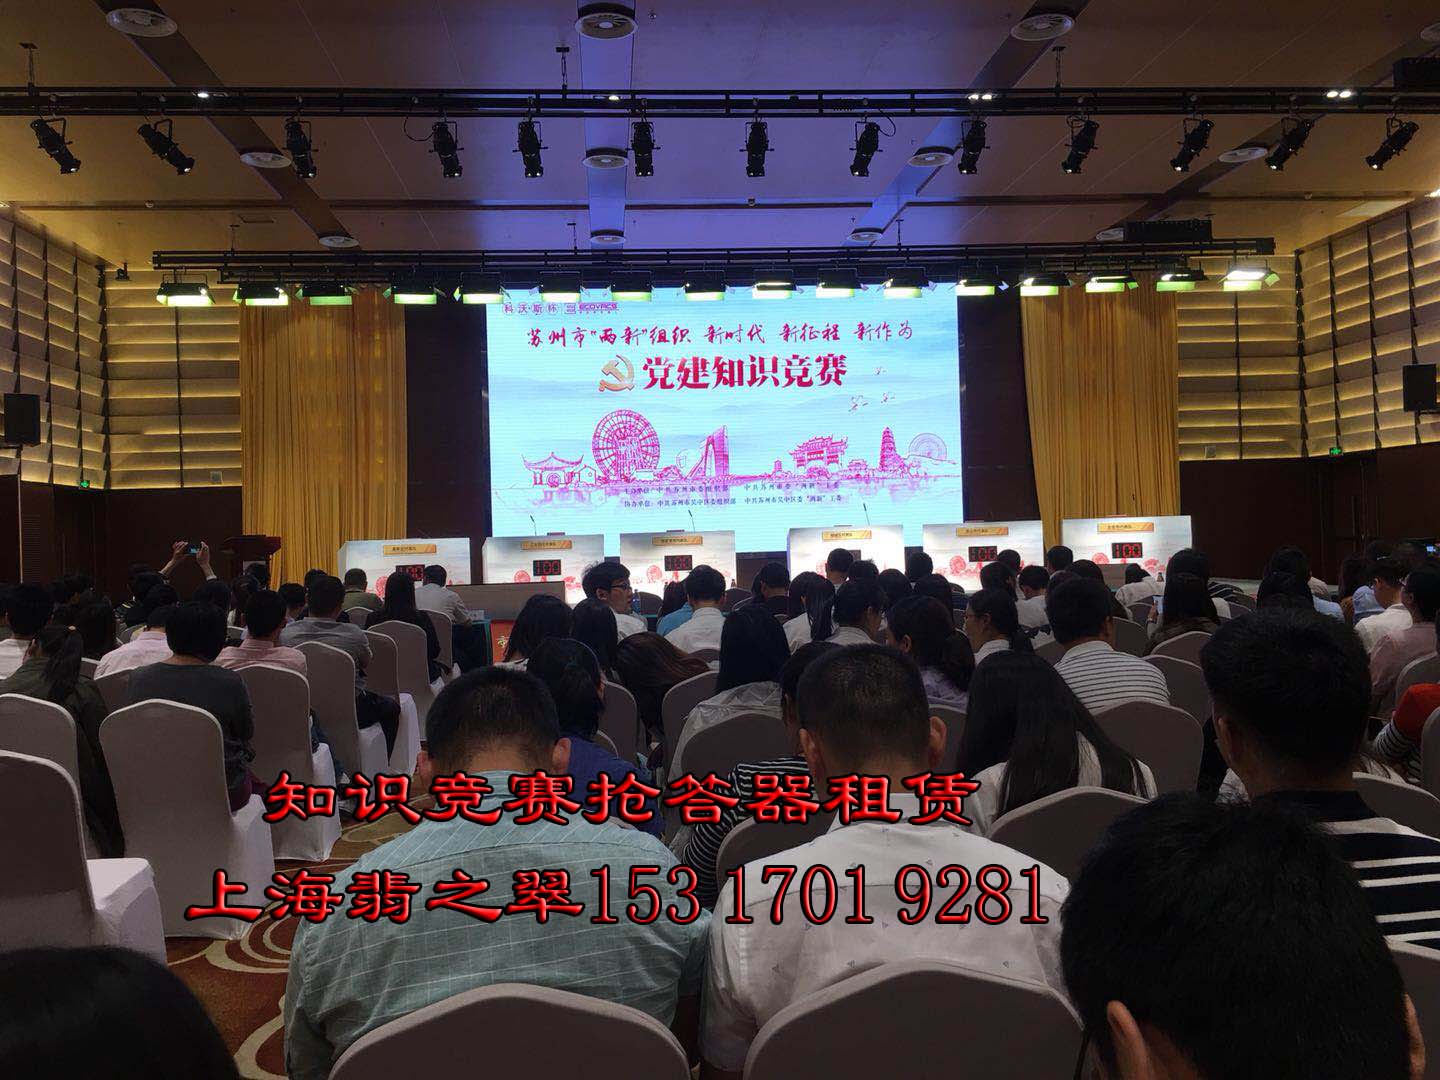 （上海）投票器评分器，抢答器，无线导览活动竞赛专业抢答器，设备租赁找翡之翠。图片